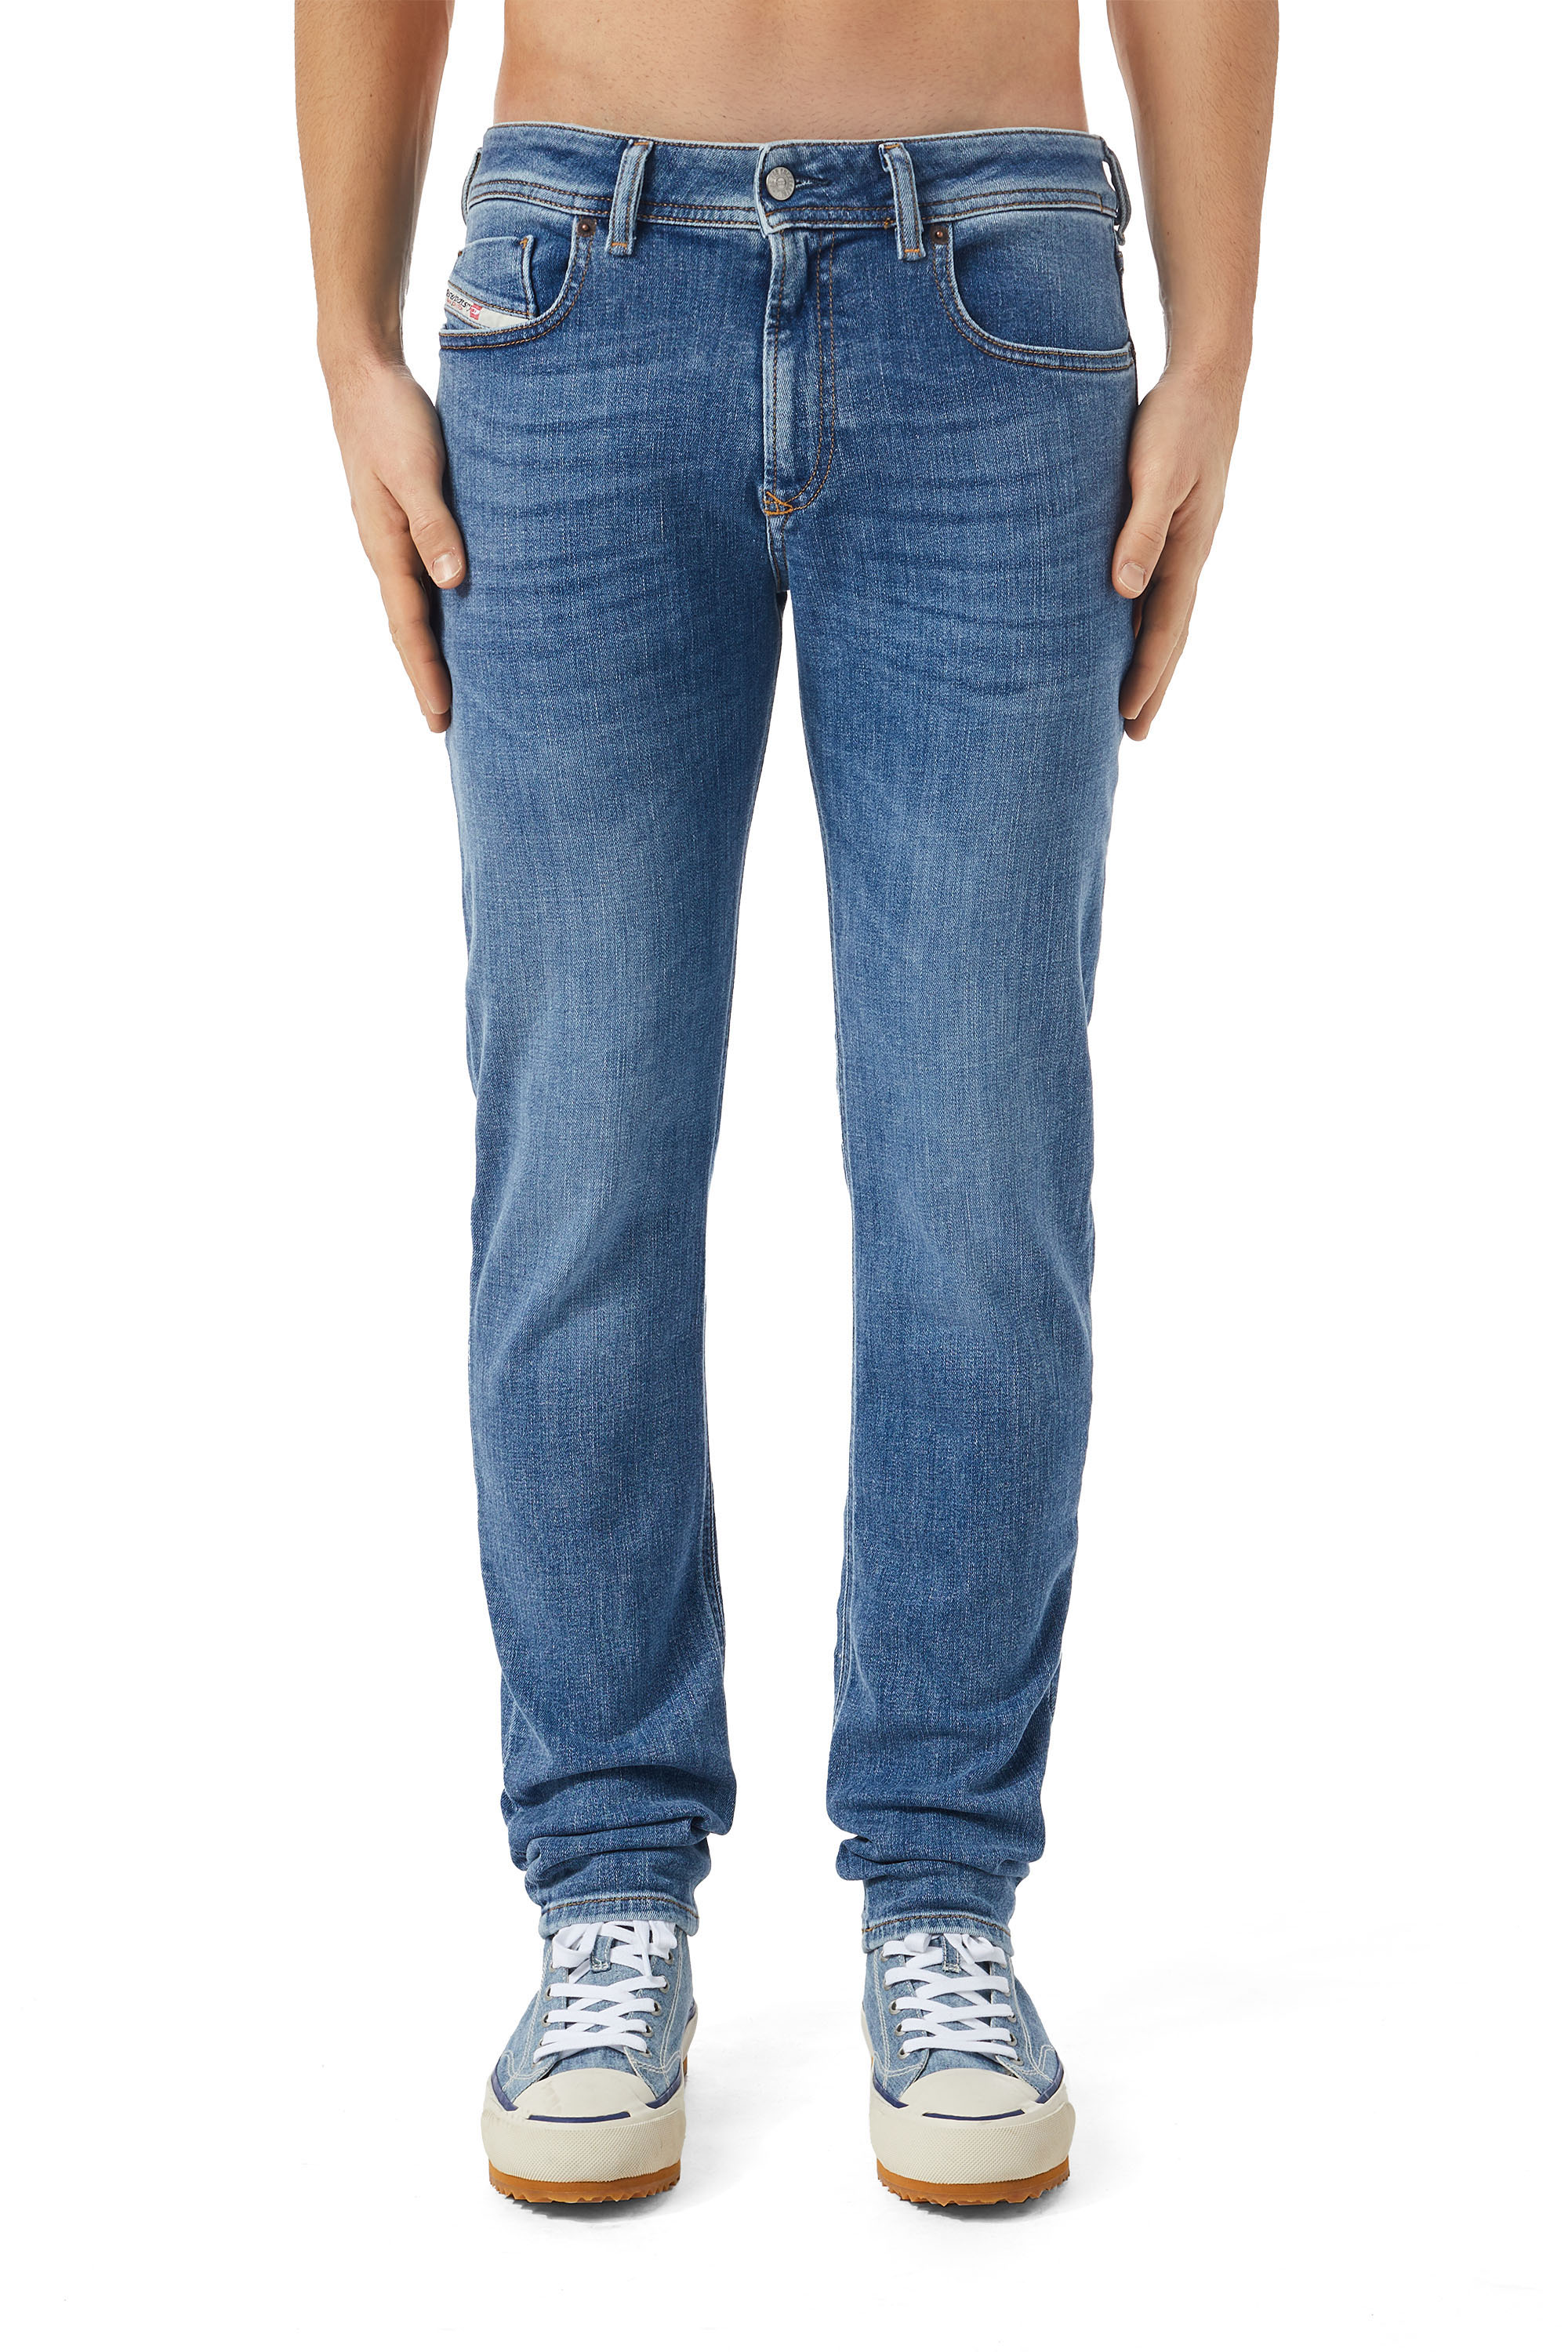 1979 SLEENKER 09C01 Skinny Jeans, Blu medio - Jeans